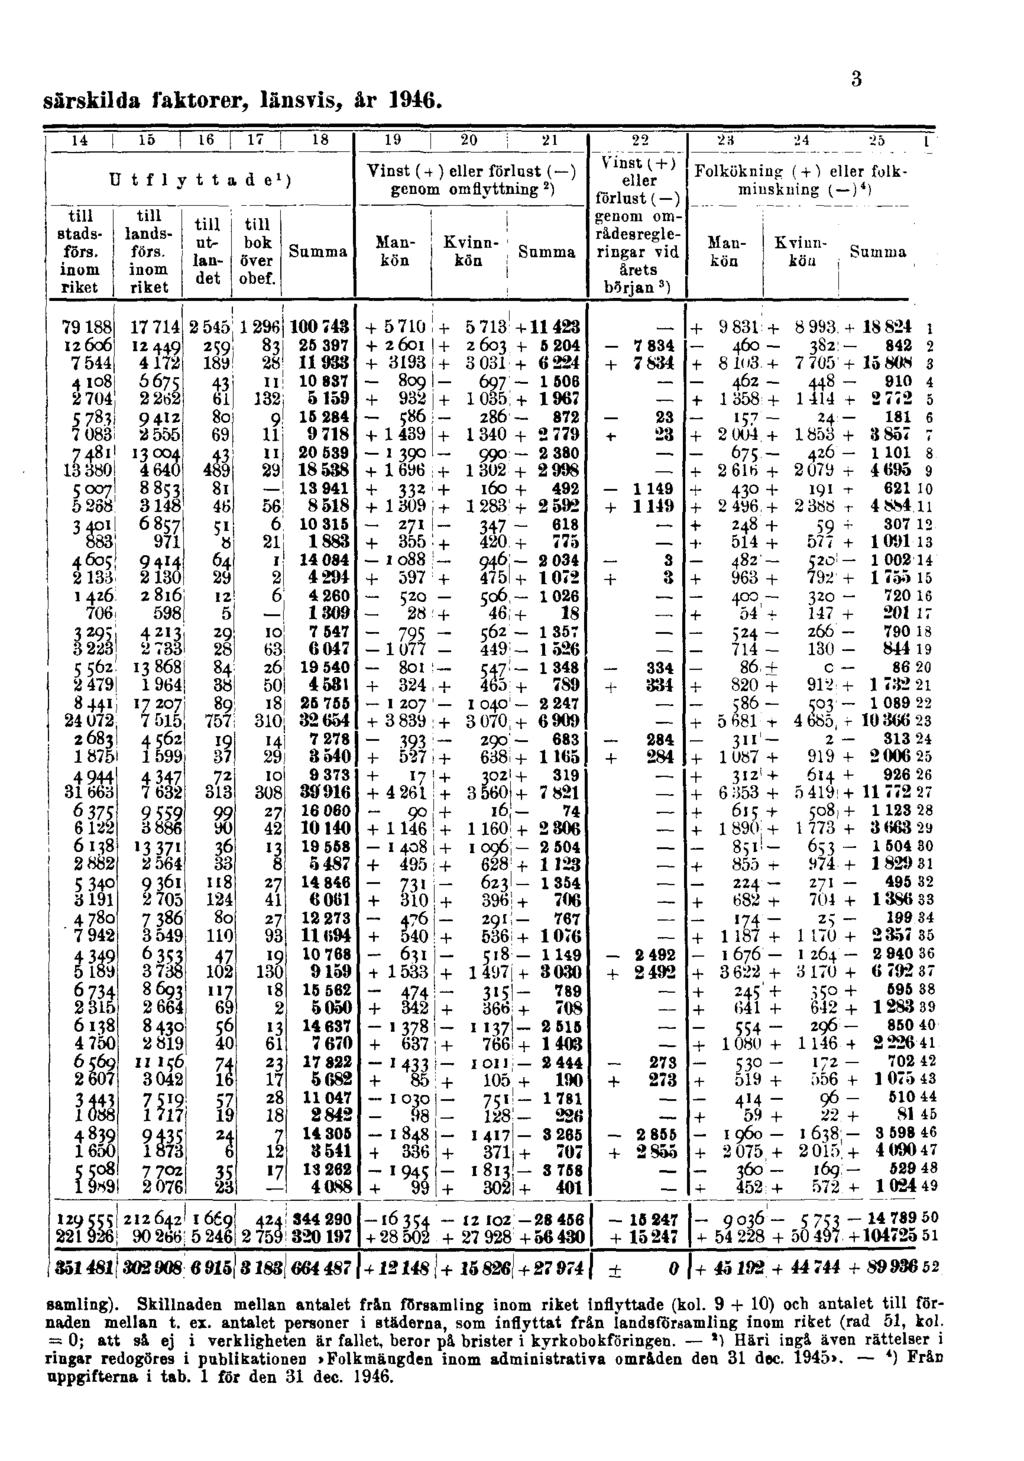 särskilda faktorer, länsvis, år 1916. 3 samling). Skillnaden mellan antalet frln församling inom riket inflyttade (kol. 9 + 10) och antalet till förnaden mellan t. ex.